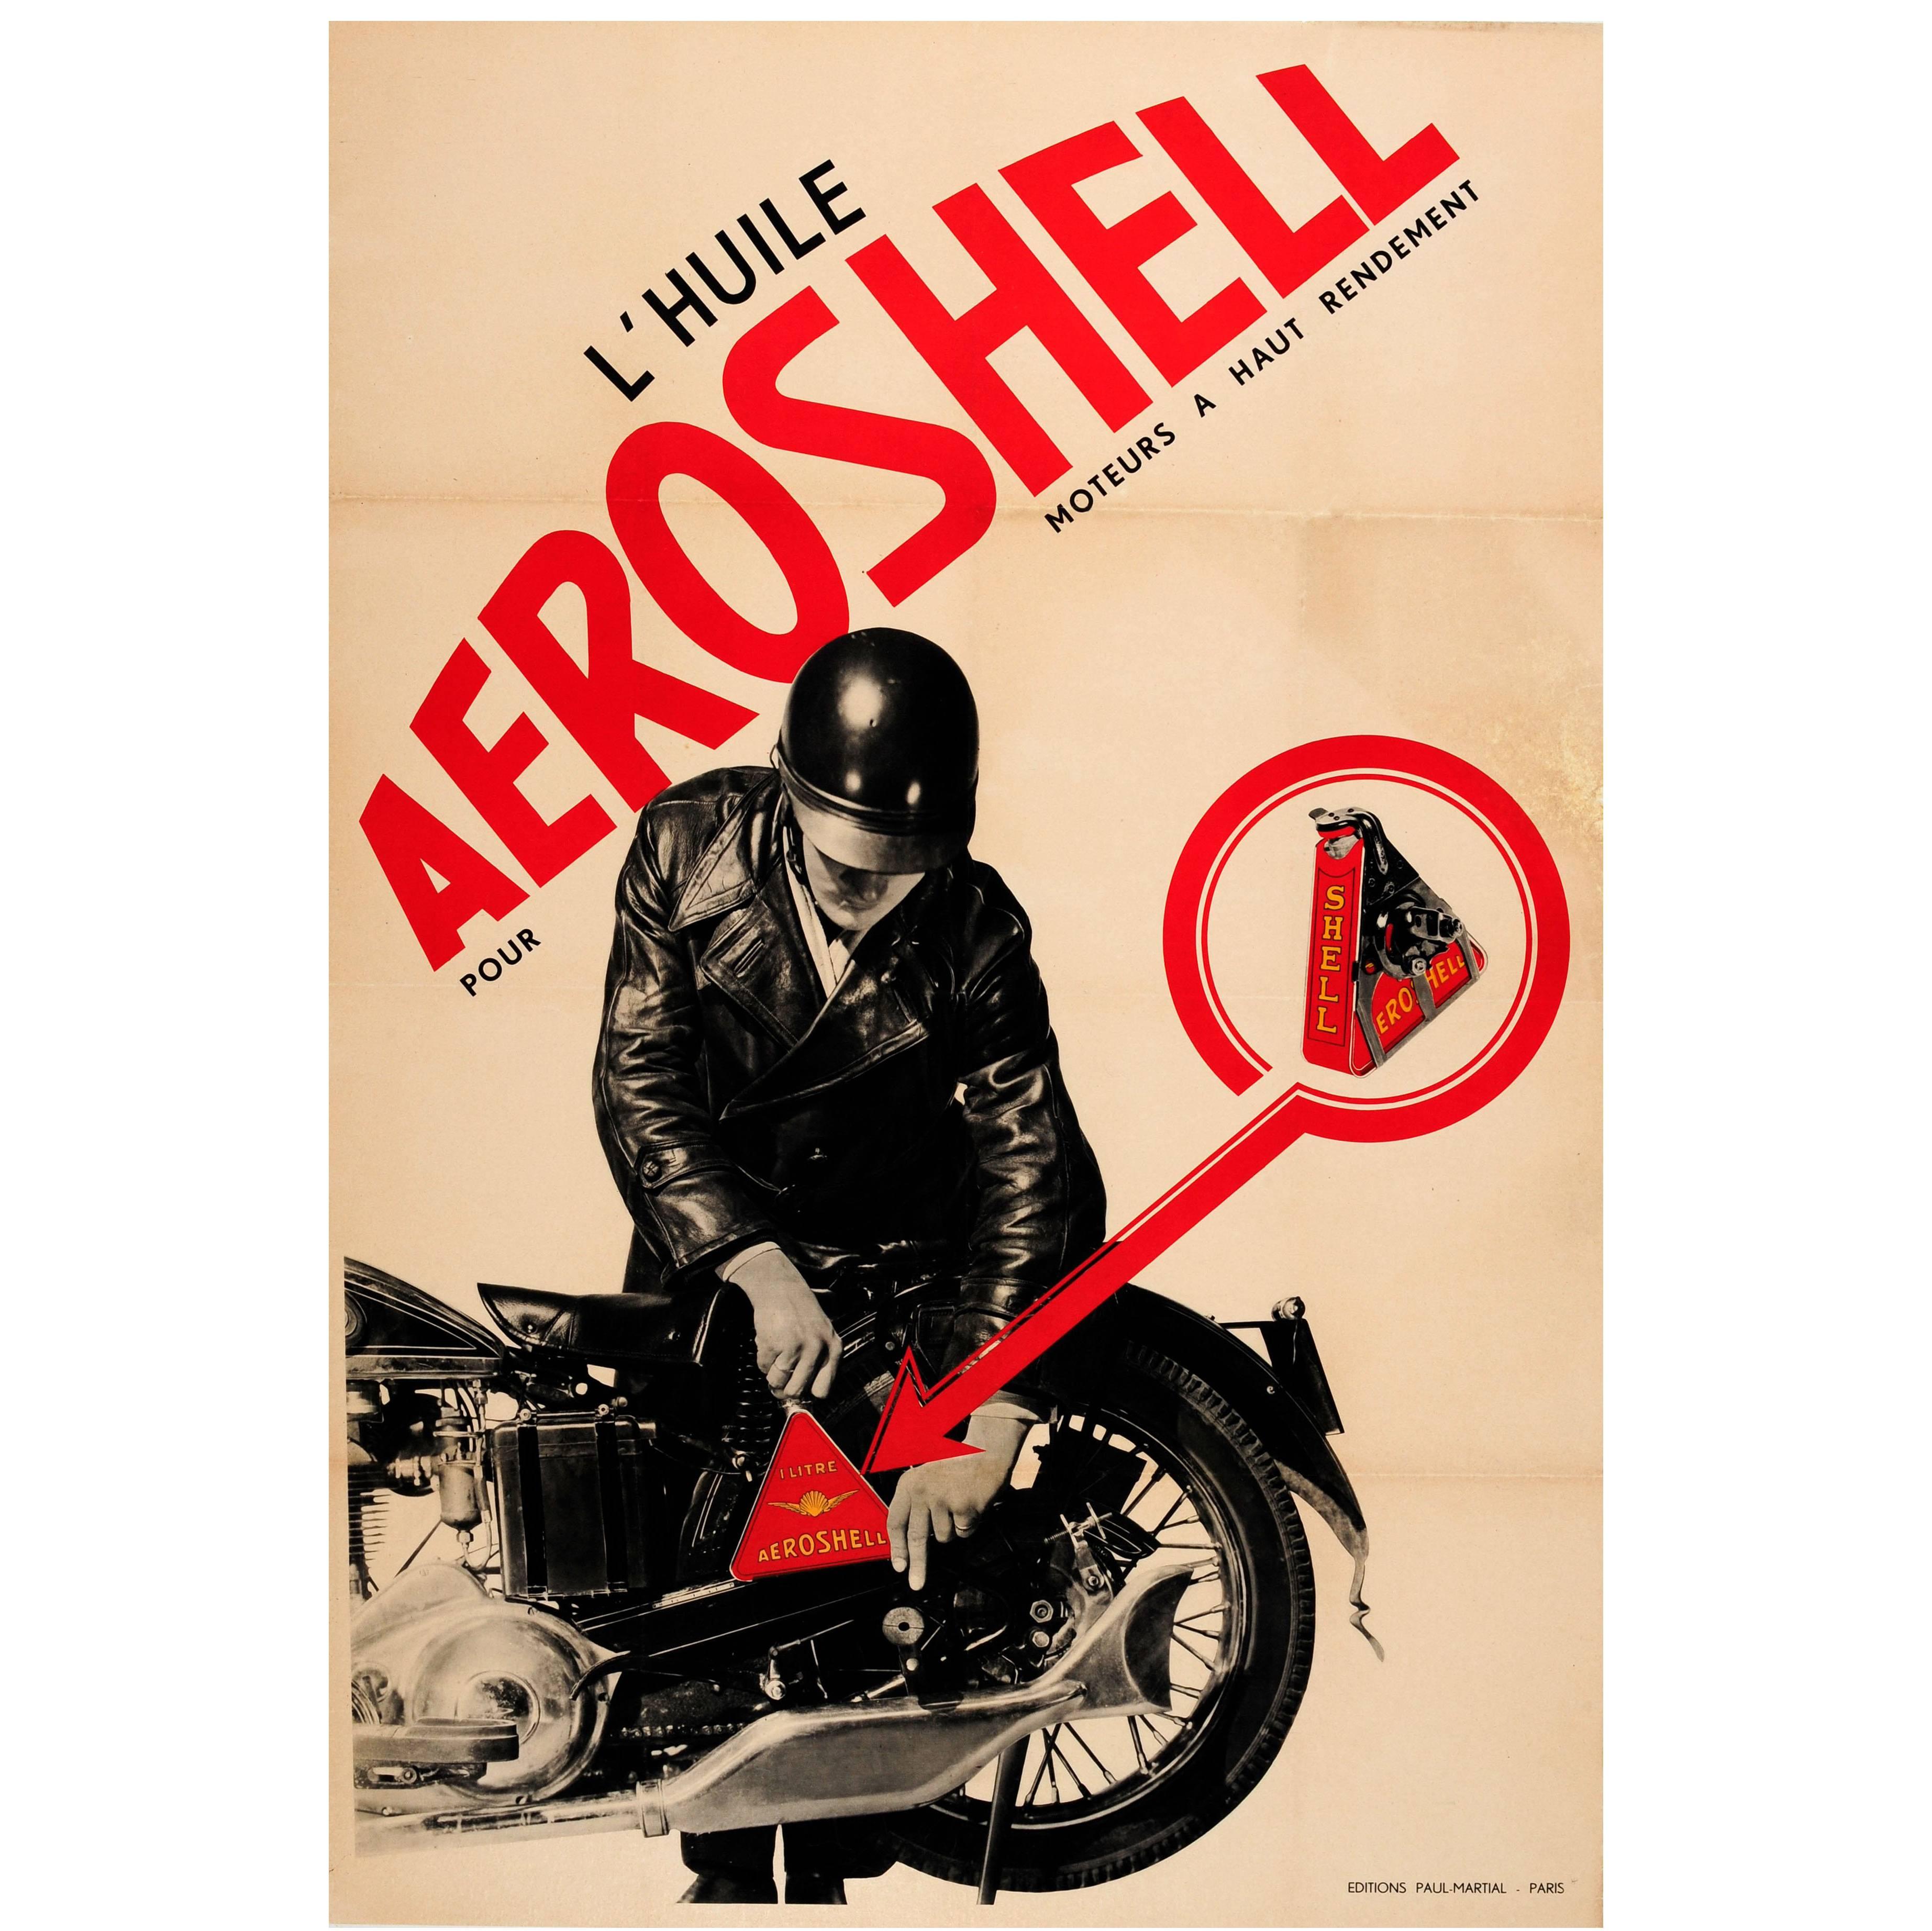 Original Vintage Constructivist Design Advertising Poster for Aeroshell Oil